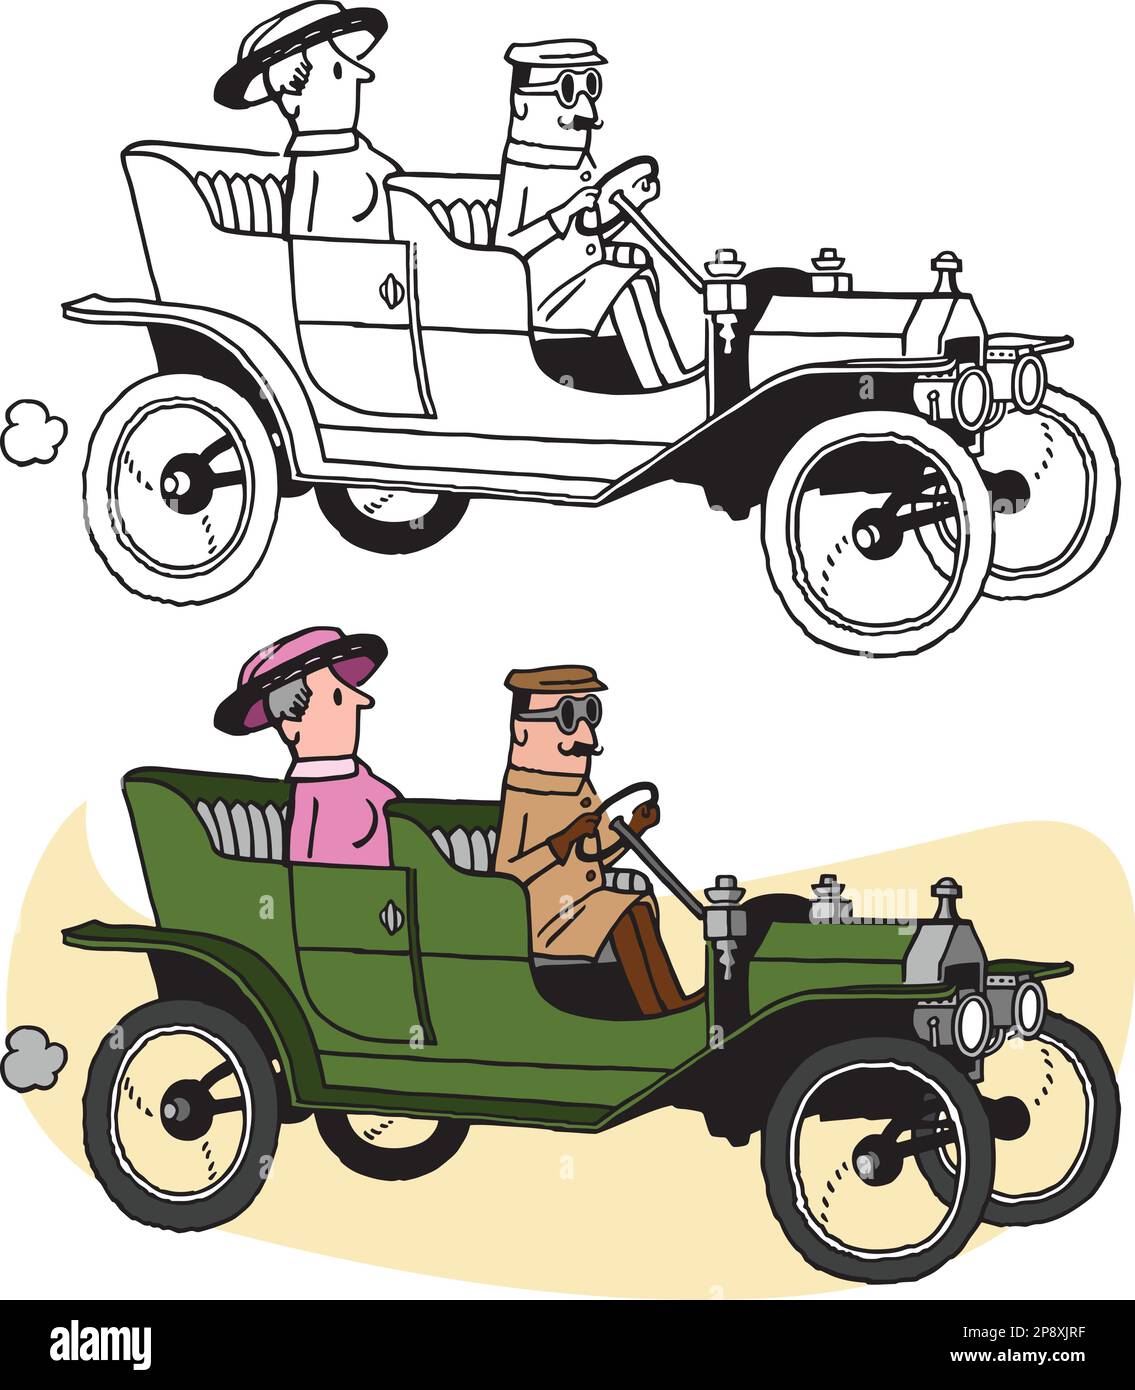 Ein Retro-Cartoon von einem Mann, der eine Frau in einem alten Roadster-Auto fährt. Stock Vektor